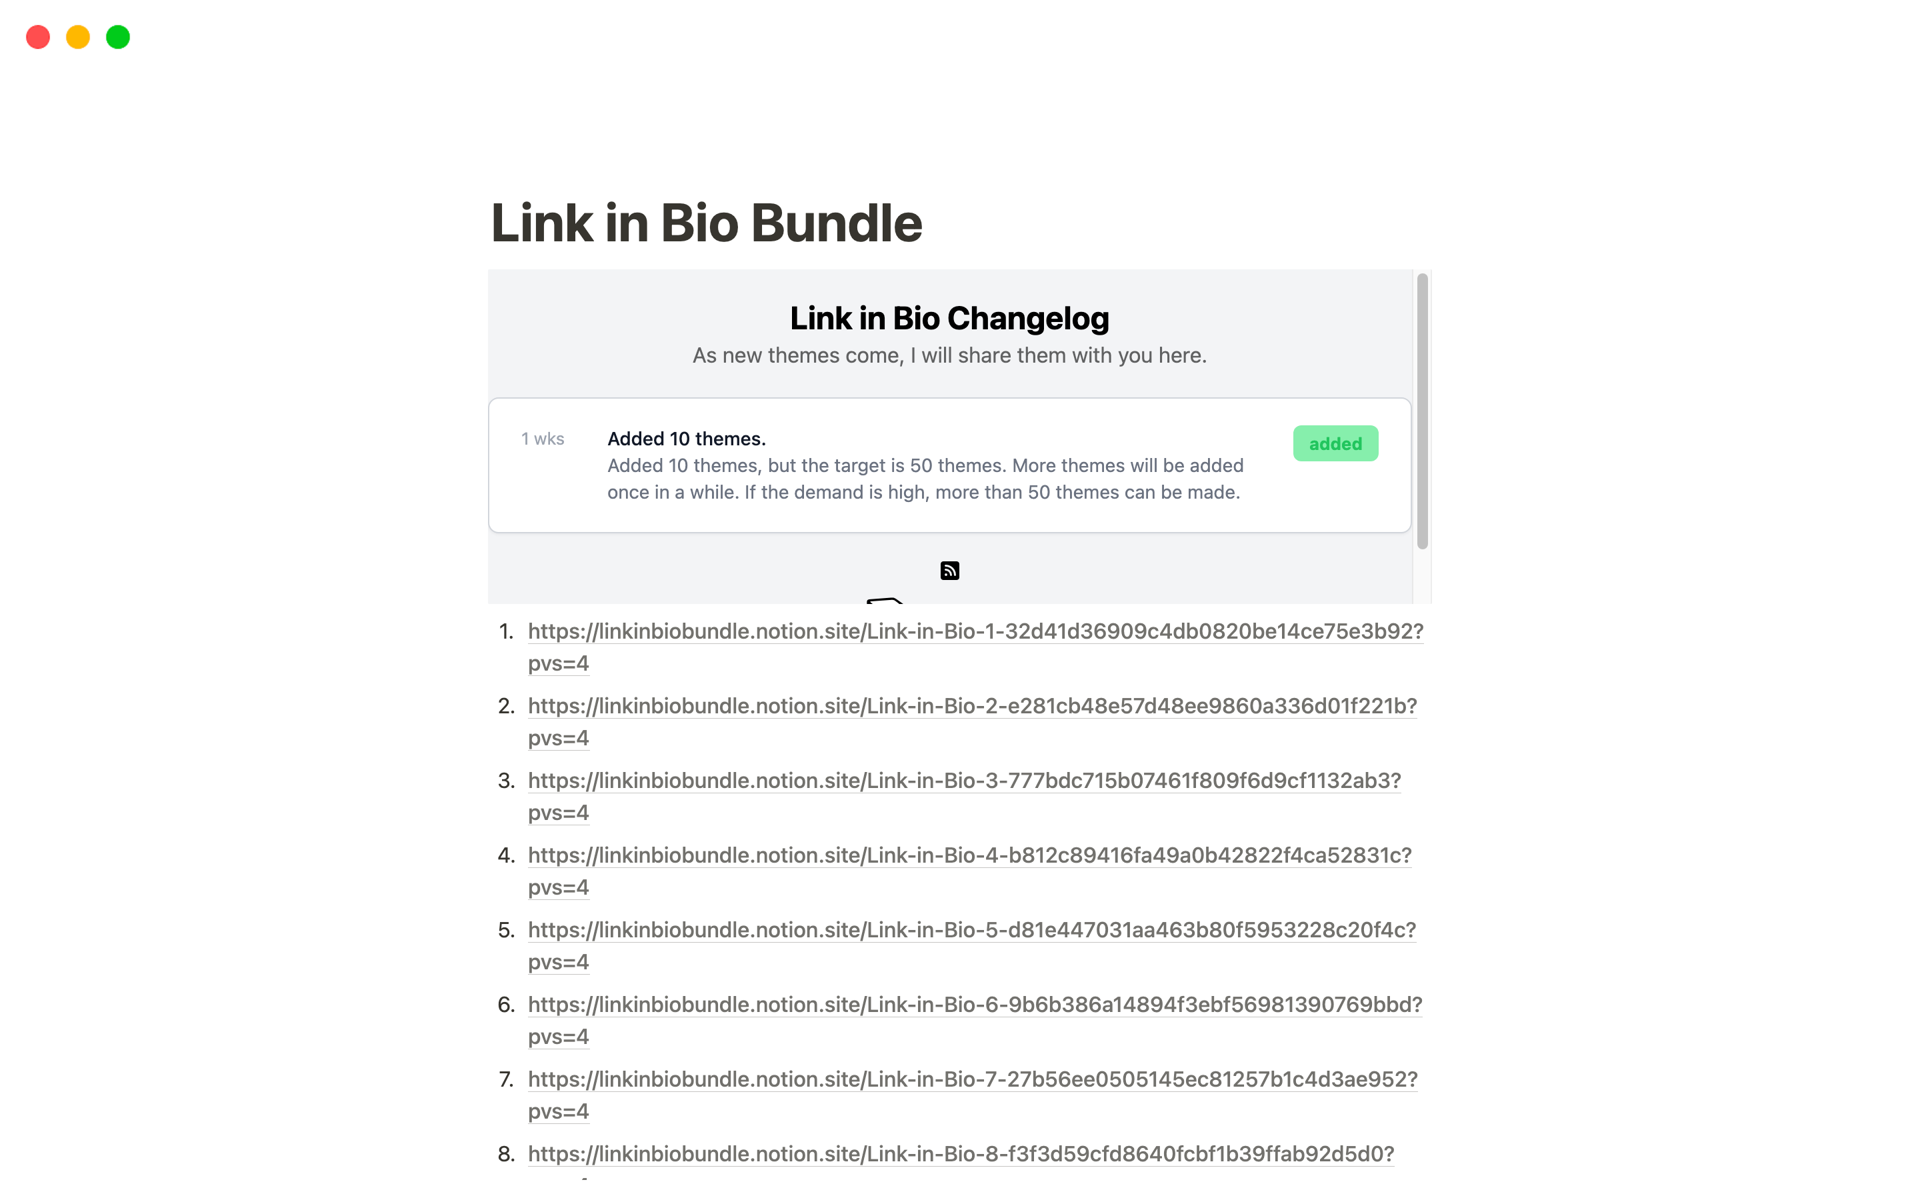 Aperçu du modèle de Link in Bio Bundle